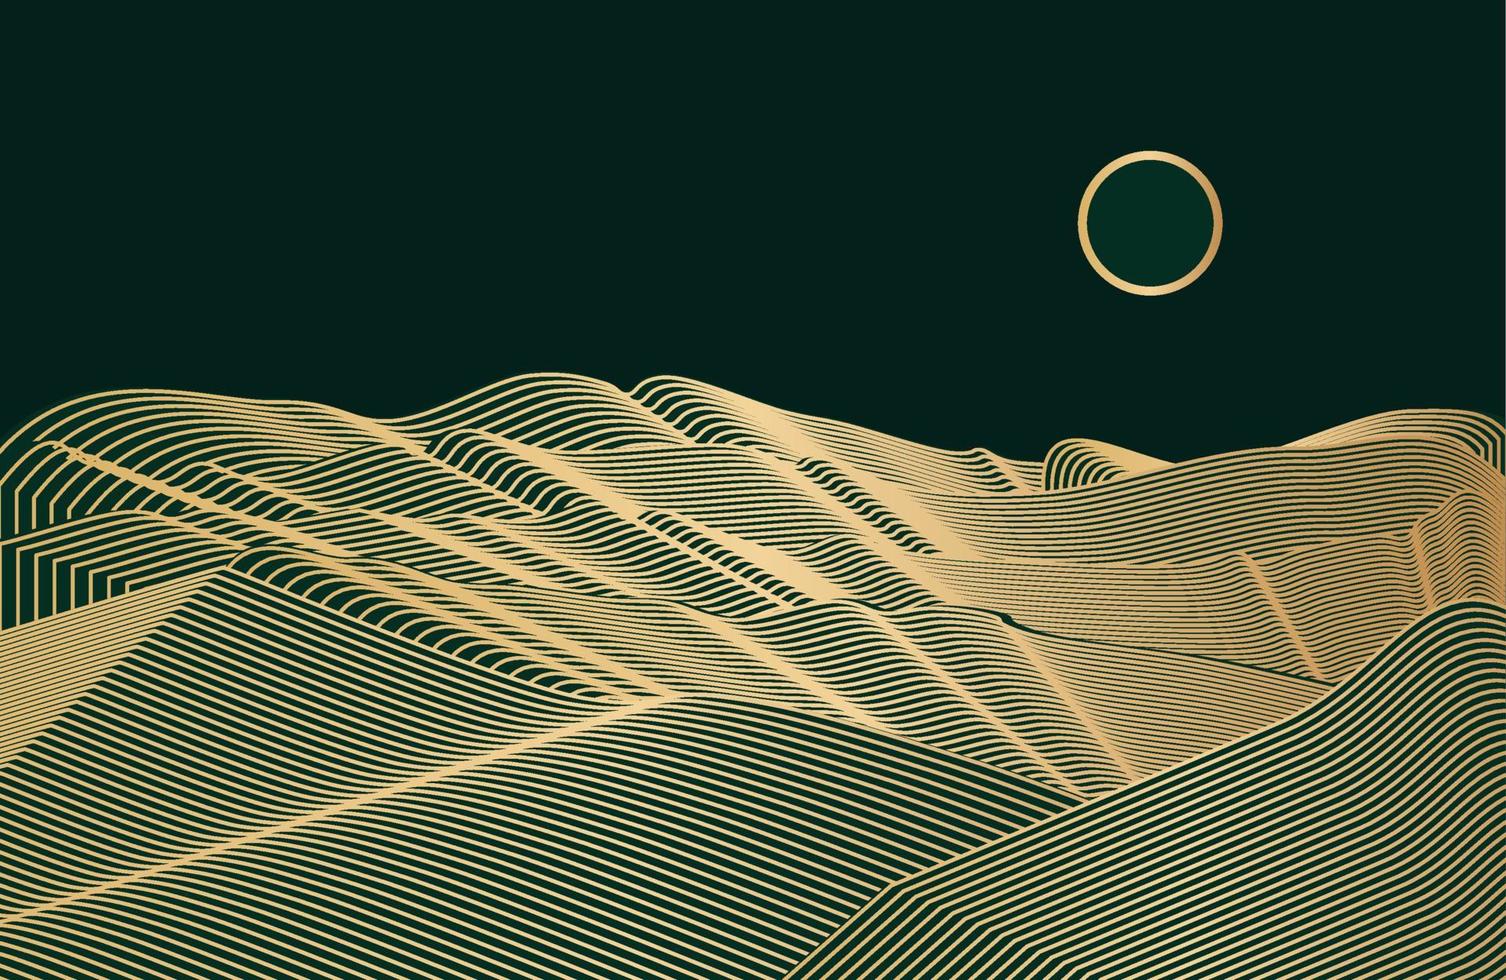 minimalistische moderne berglijn. abstracte berg hedendaagse esthetische achtergronden landschappen. ontwerp van de berglay-out in oosterse stijl. vector